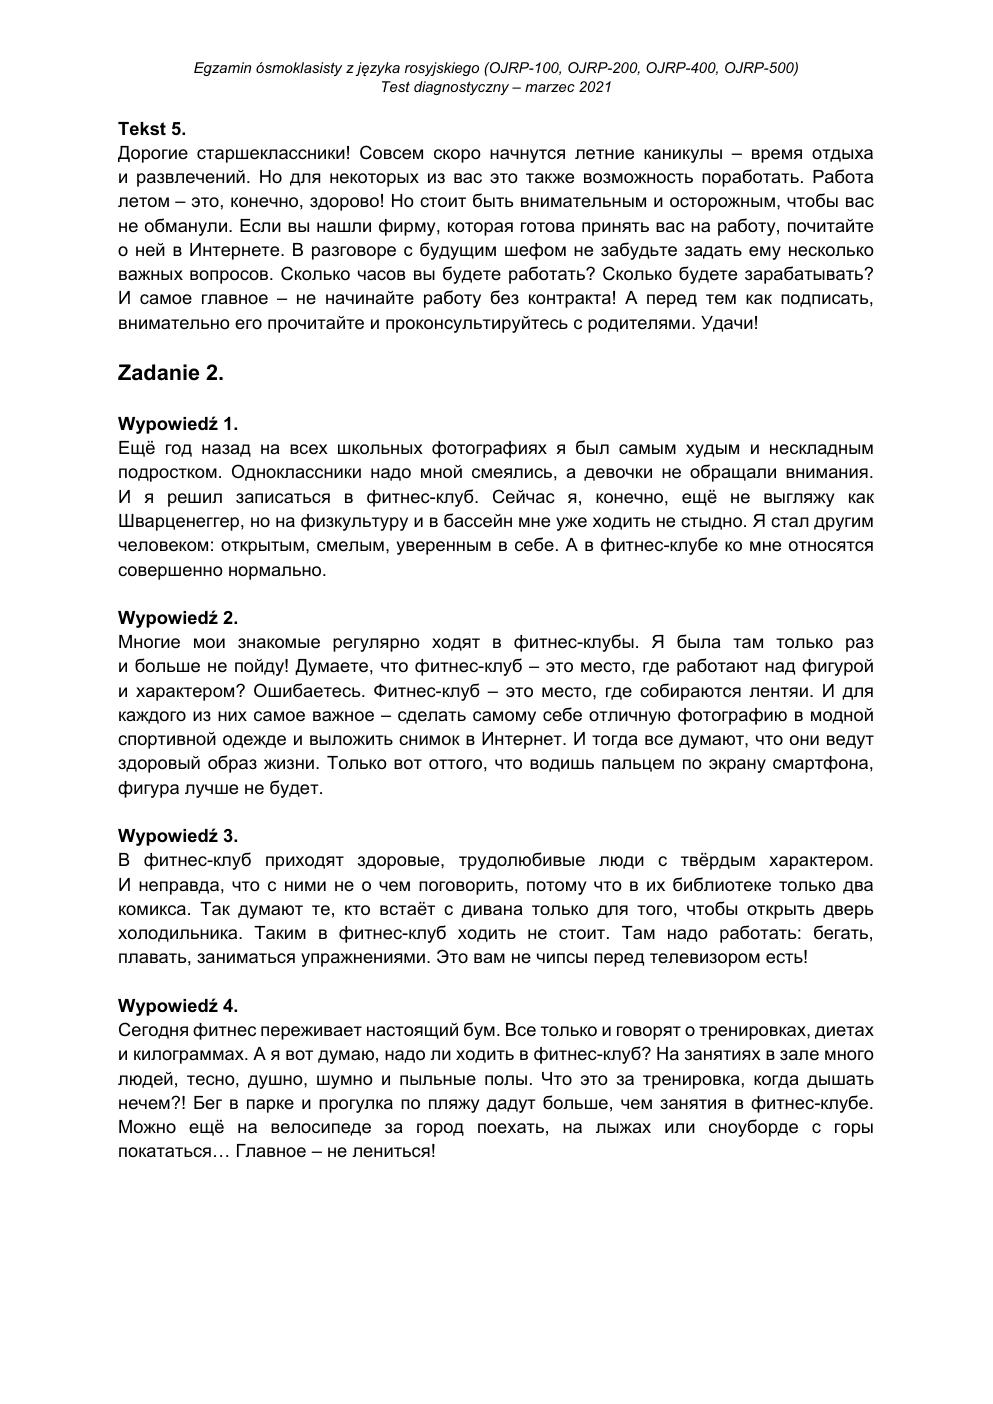 transkrypcja - rosyjski - egzamin ósmoklasisty 2021 próbny-2